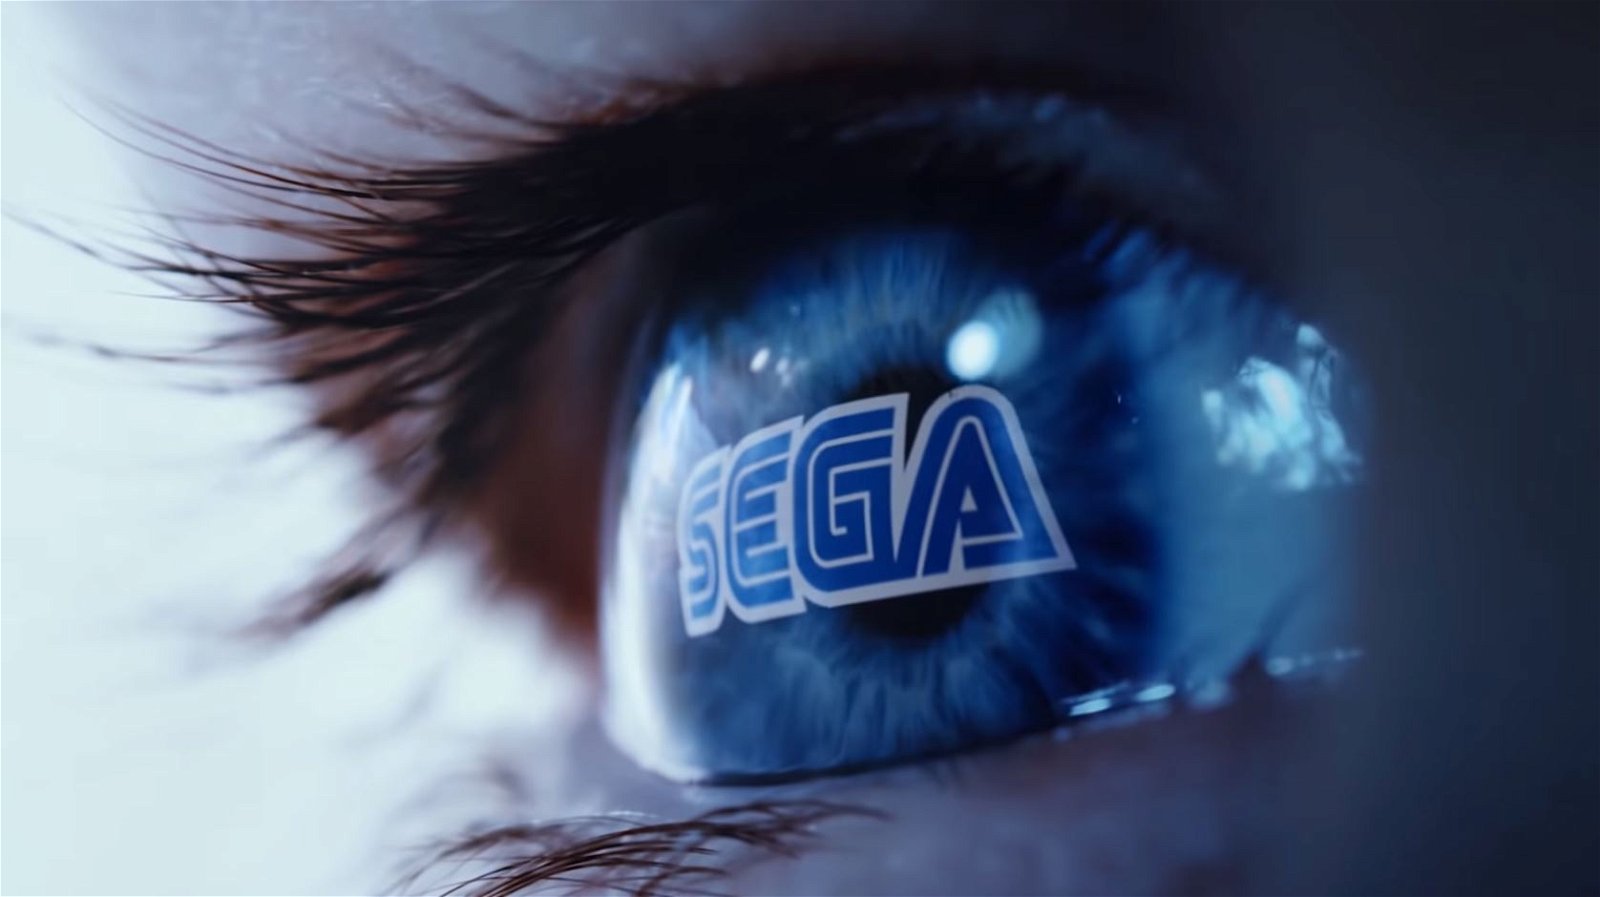 SEGA confirma que la franquicia Sonic supera los 1.500 millones de ventas y descargas